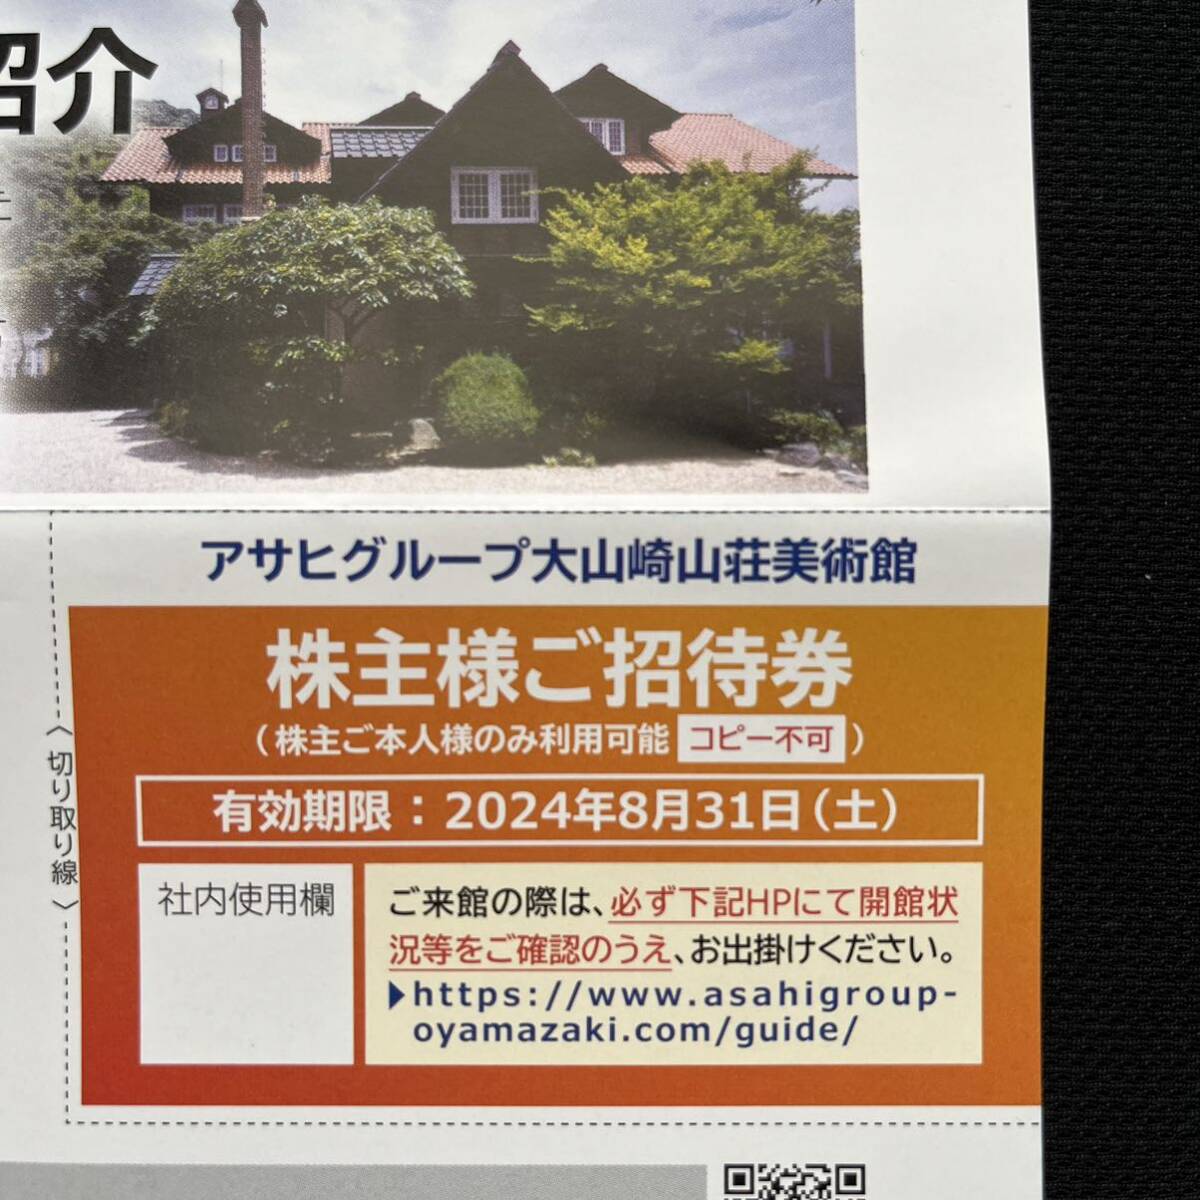  Asahi группа Ooyamazaki гора . картинная галерея акционер sama приглашение талон бесплатный талон * стоимость доставки 63 иен ~